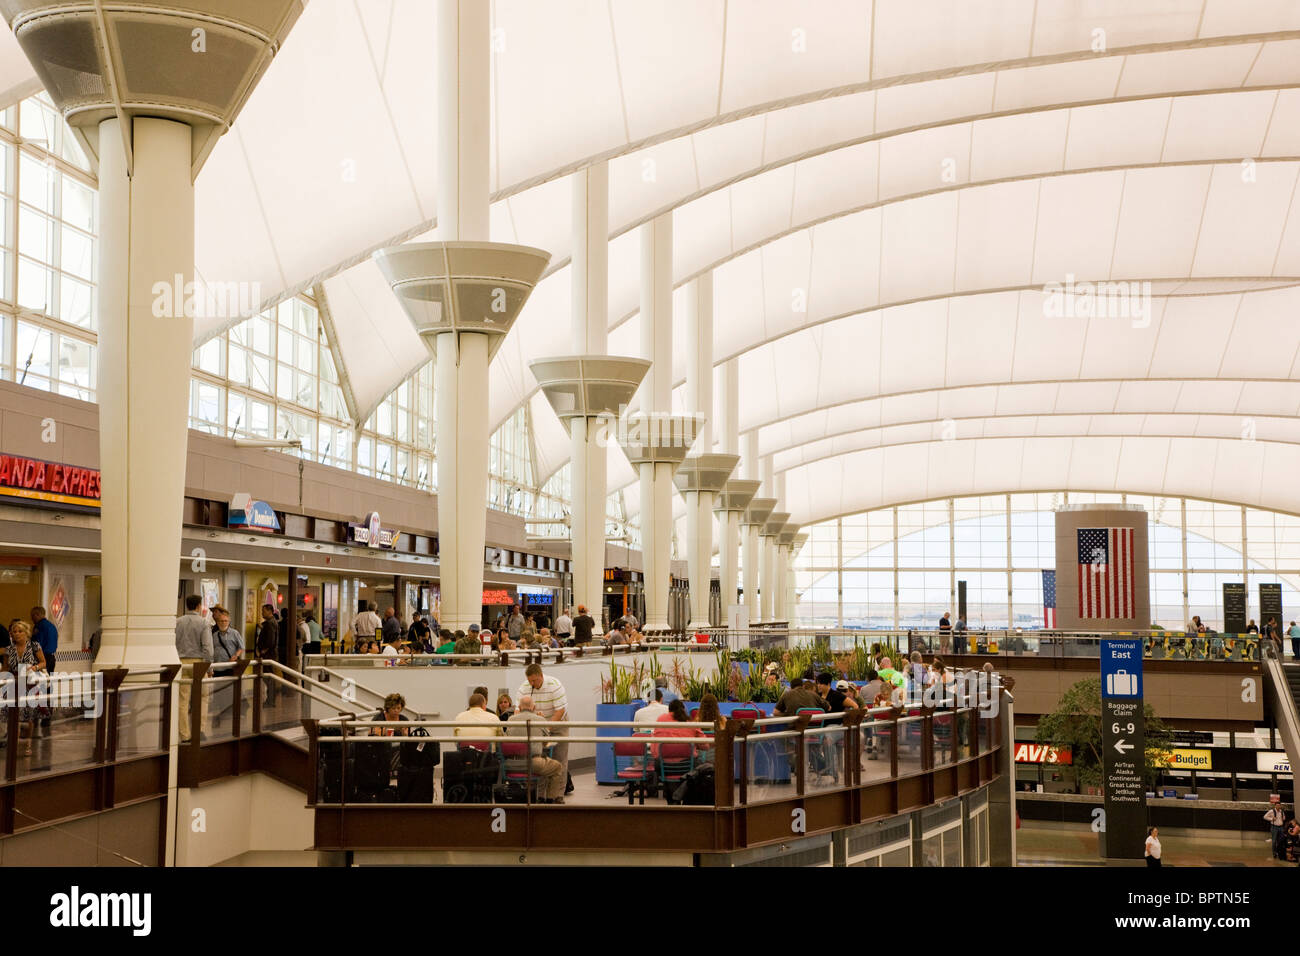 Interior view of the Denver International Airport, Denver, Colorado, USA Stock Photo